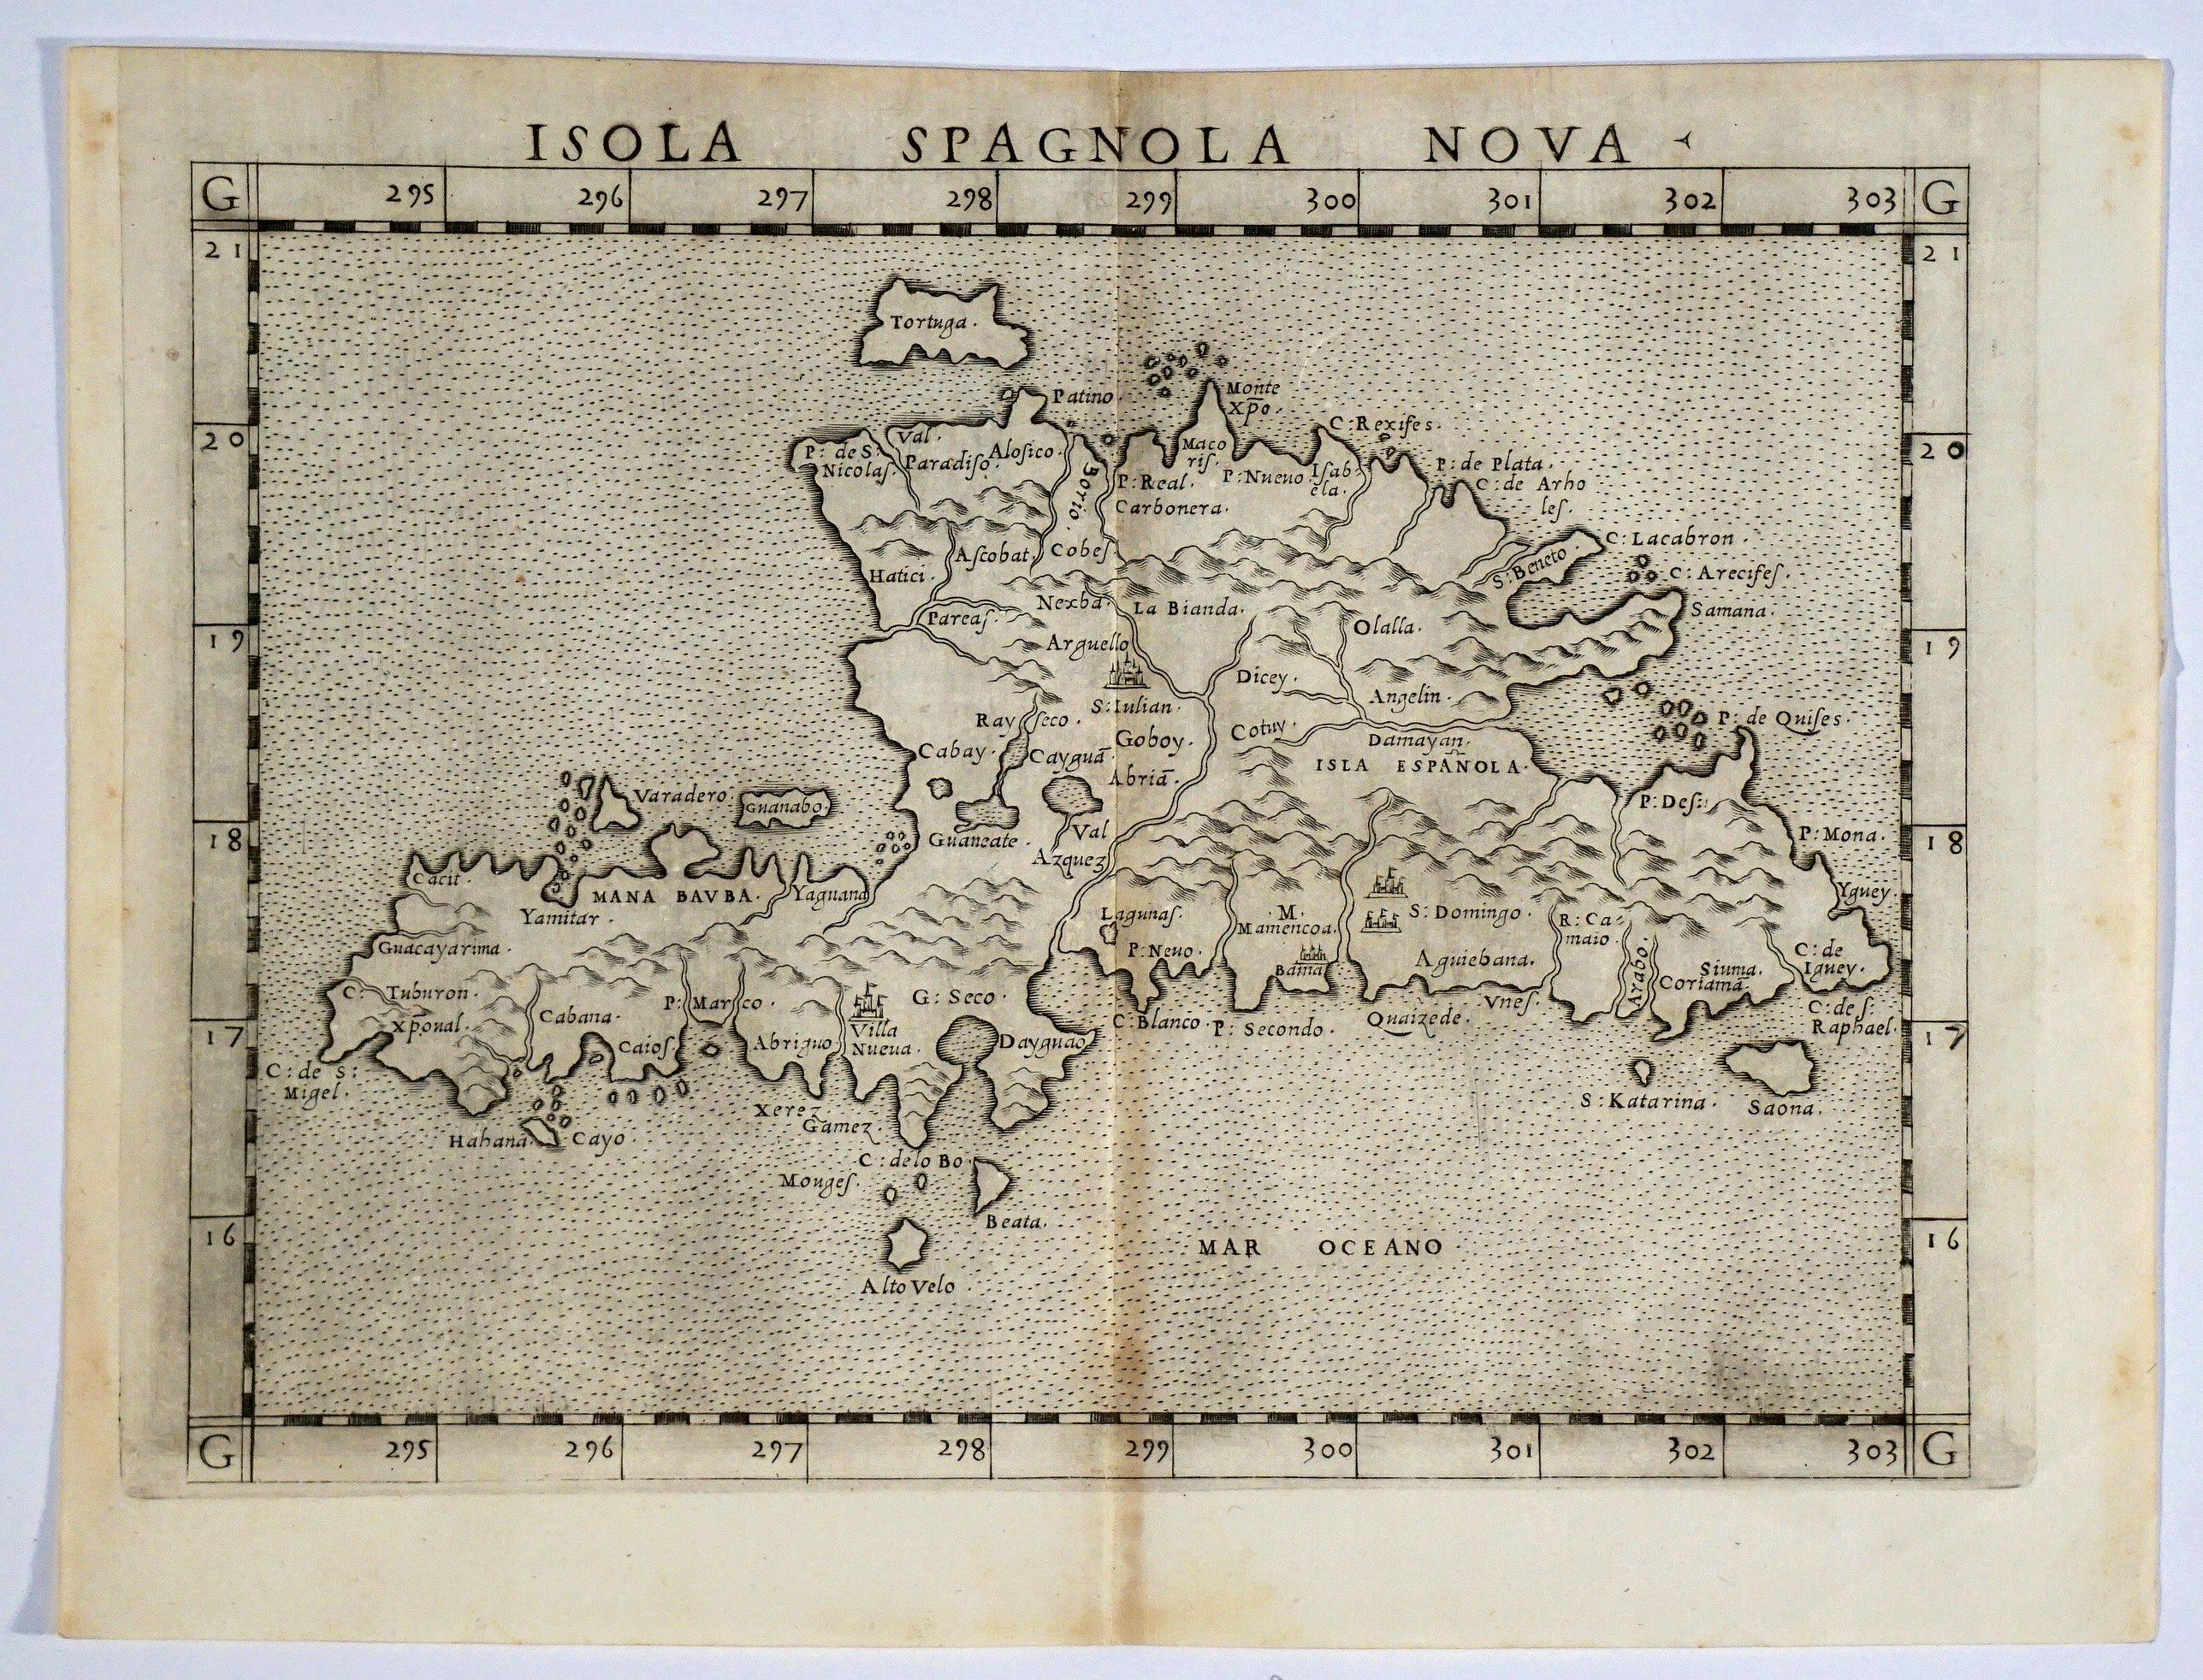 	Isola Spagnola Nova